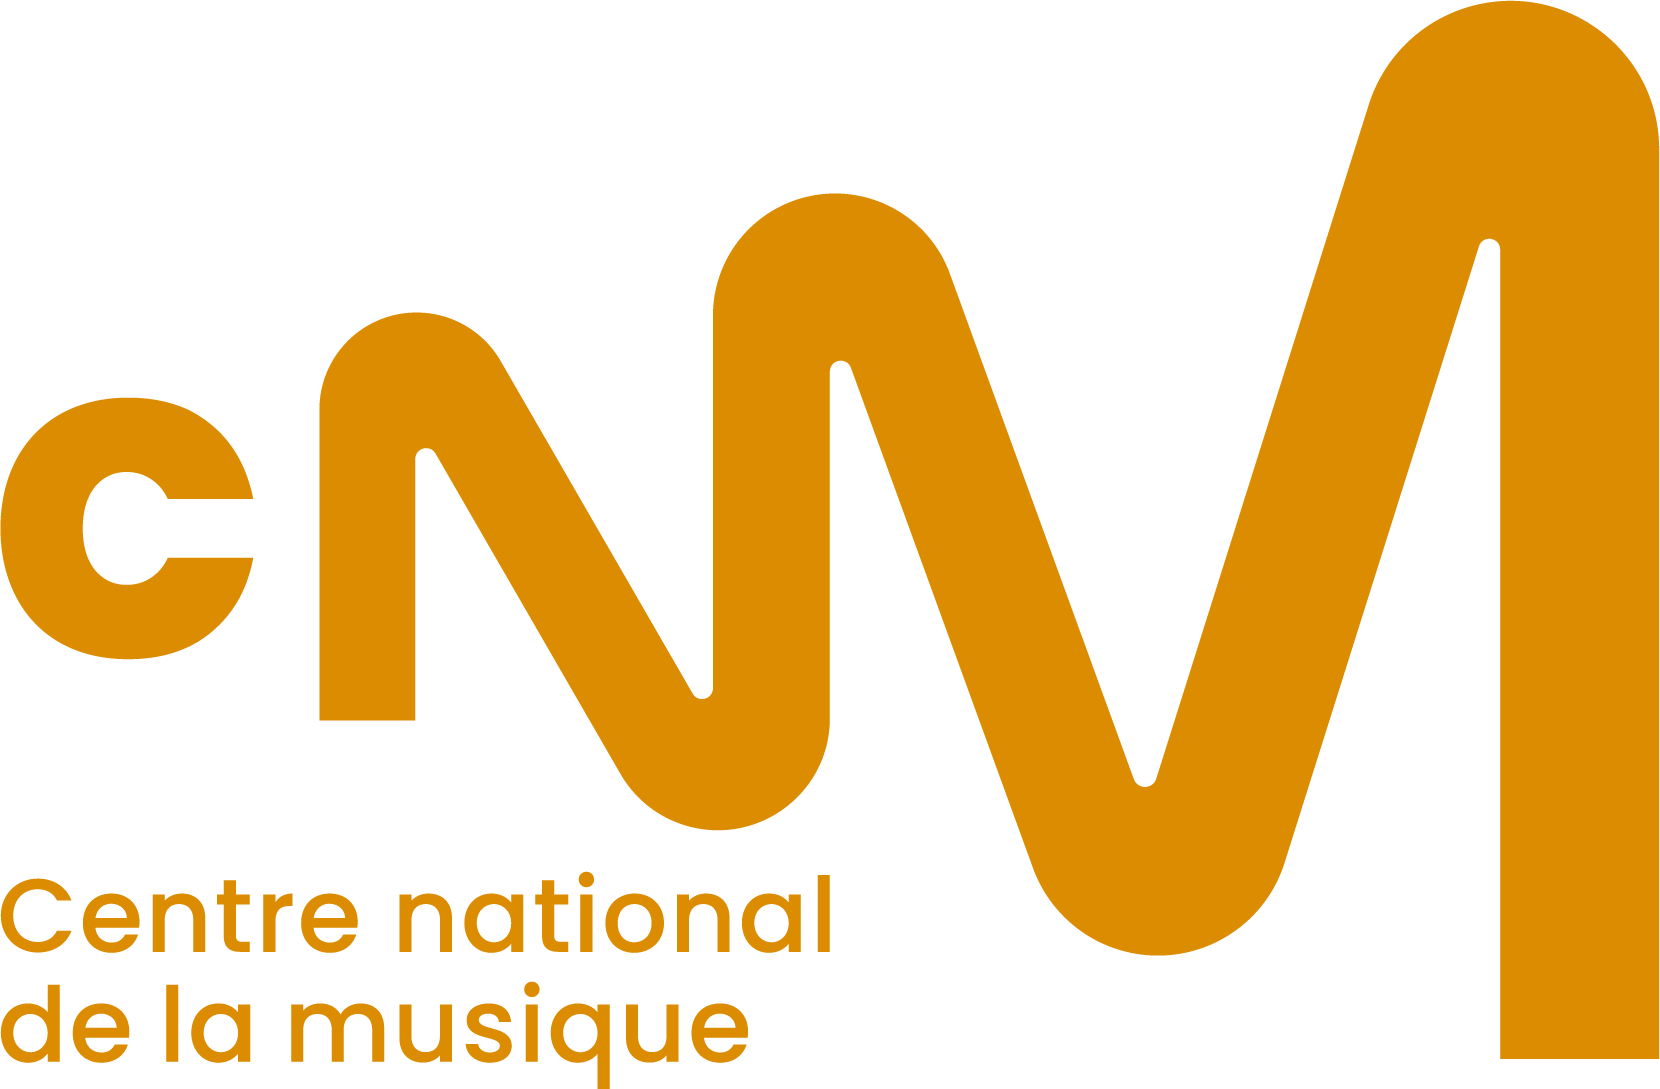 Cnm logo rduit rvb partenaire